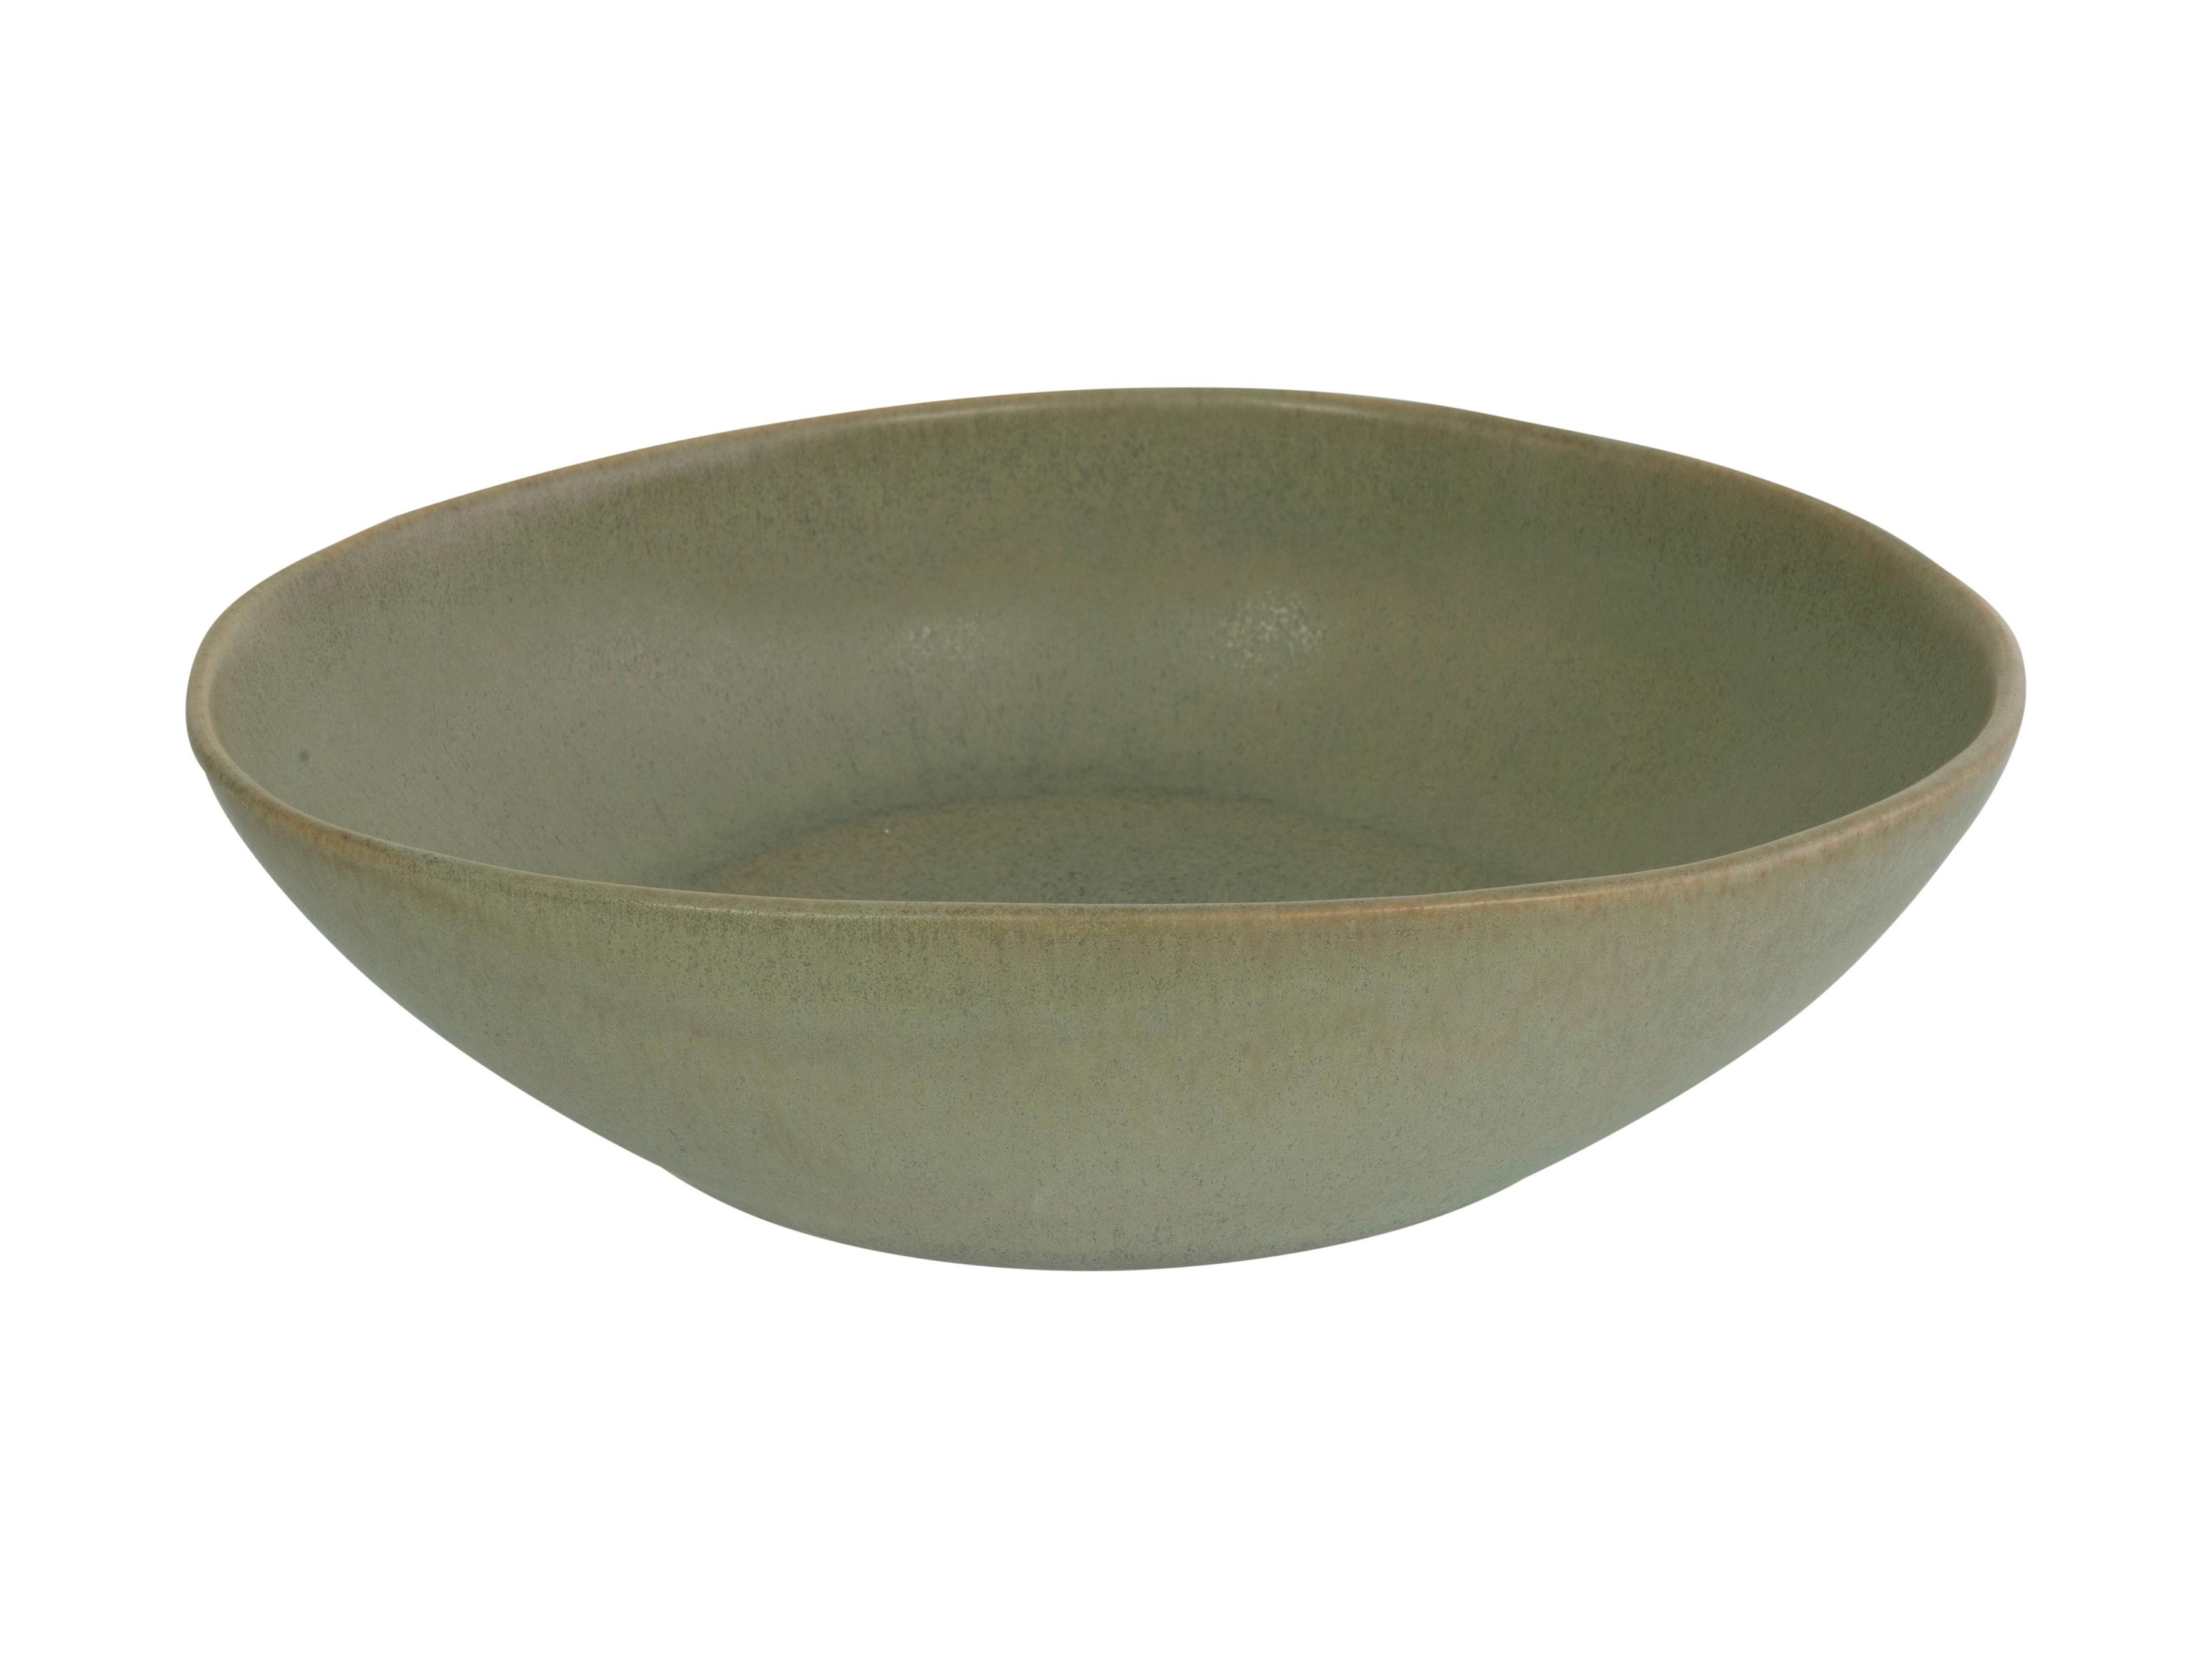 Salátová Mísa Gourmet - M - tmavě zelená, Moderní, keramika (26,5/21/9cm) - Premium Living